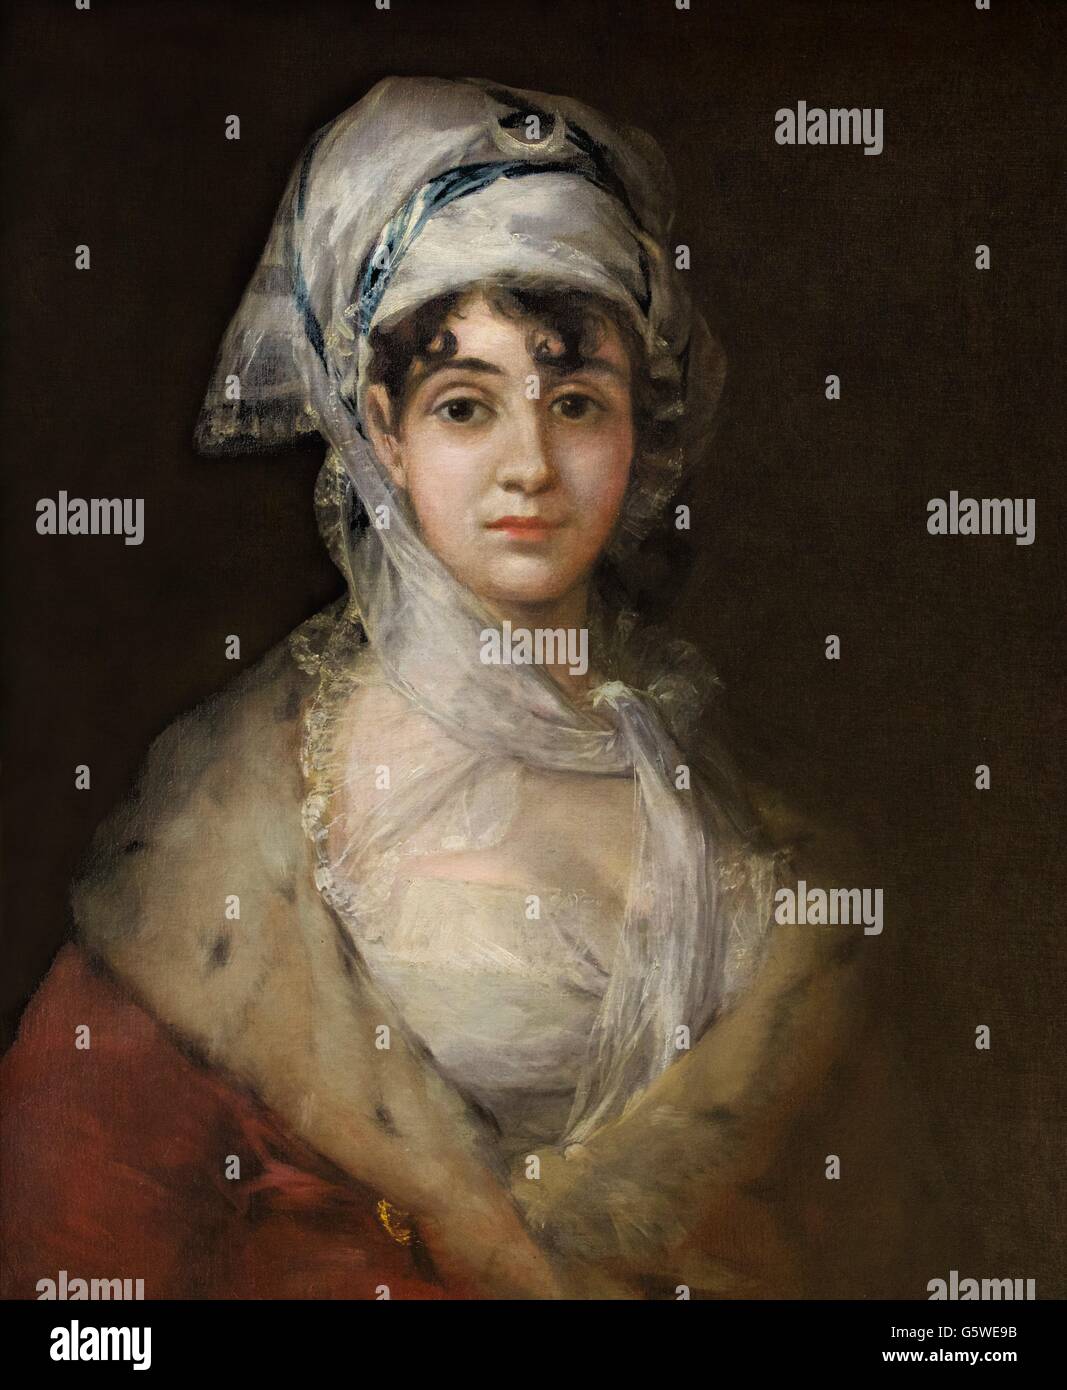 Porträt der Schauspielerin Antonia Zarate von Francisco Goya, ca. 1810-1811. Staatliche Eremitage, Sankt Petersburg, Russland Stockfoto